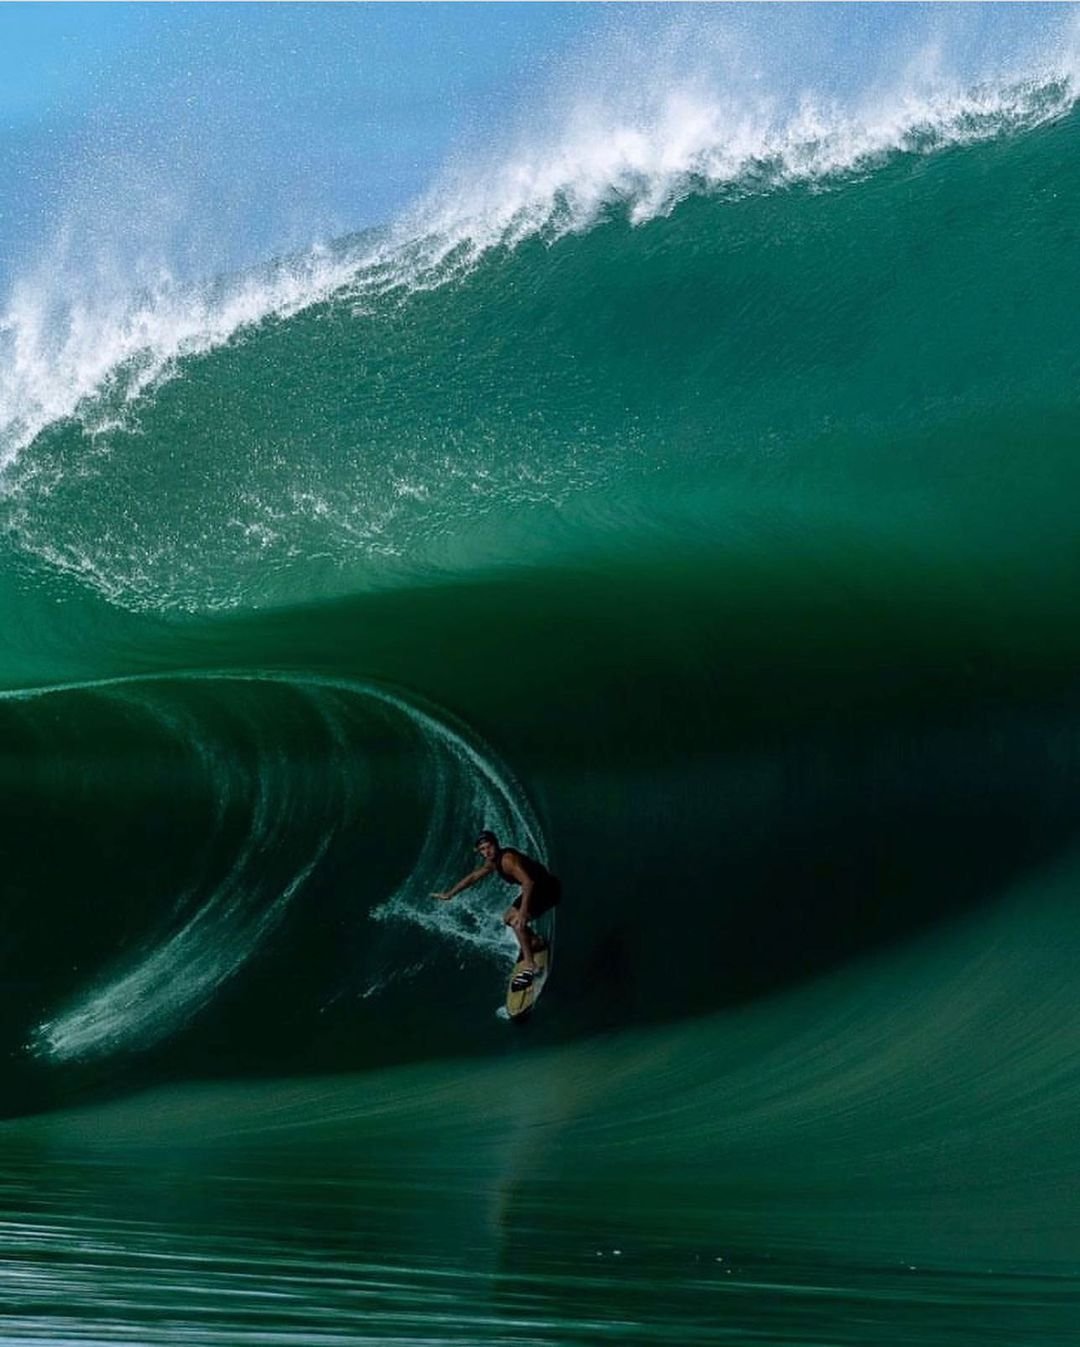 « Comme une drogue pour moi » : après un exploit remarquable dans la destination de surf la plus dangereuse au monde, un surfeur adolescent décrit son expérience